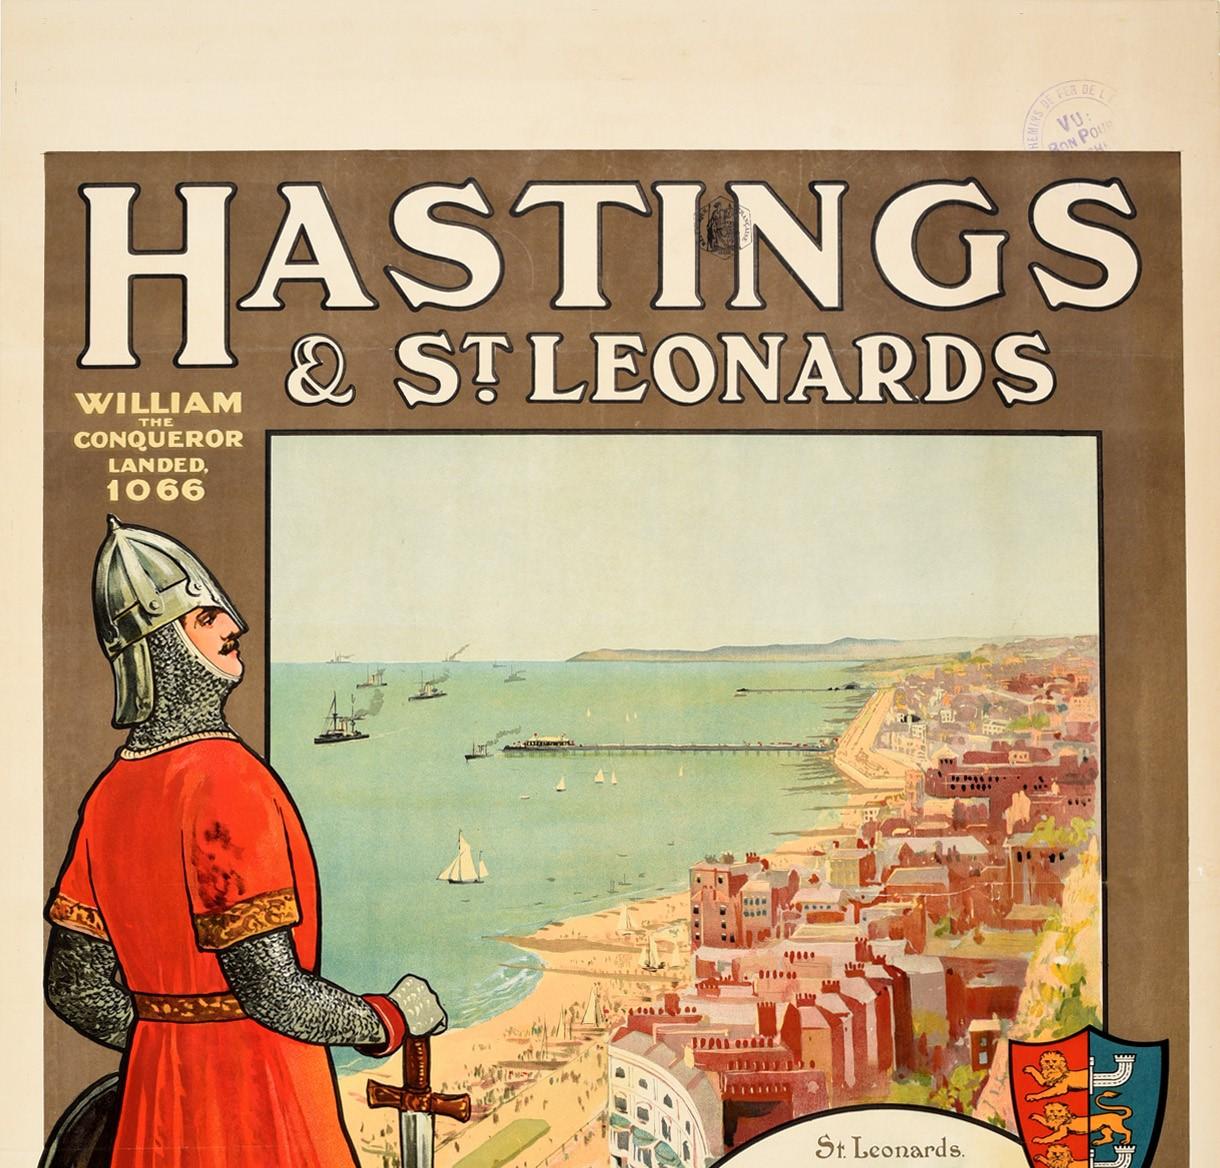 Affiche de voyage ancienne originale faisant la publicité des villes historiques de la côte sud de Hastings et St Leonards pour la santé, le paysage et le soleil tout au long de l'année Quatre miles de parade et de front de mer. sea front - avec un